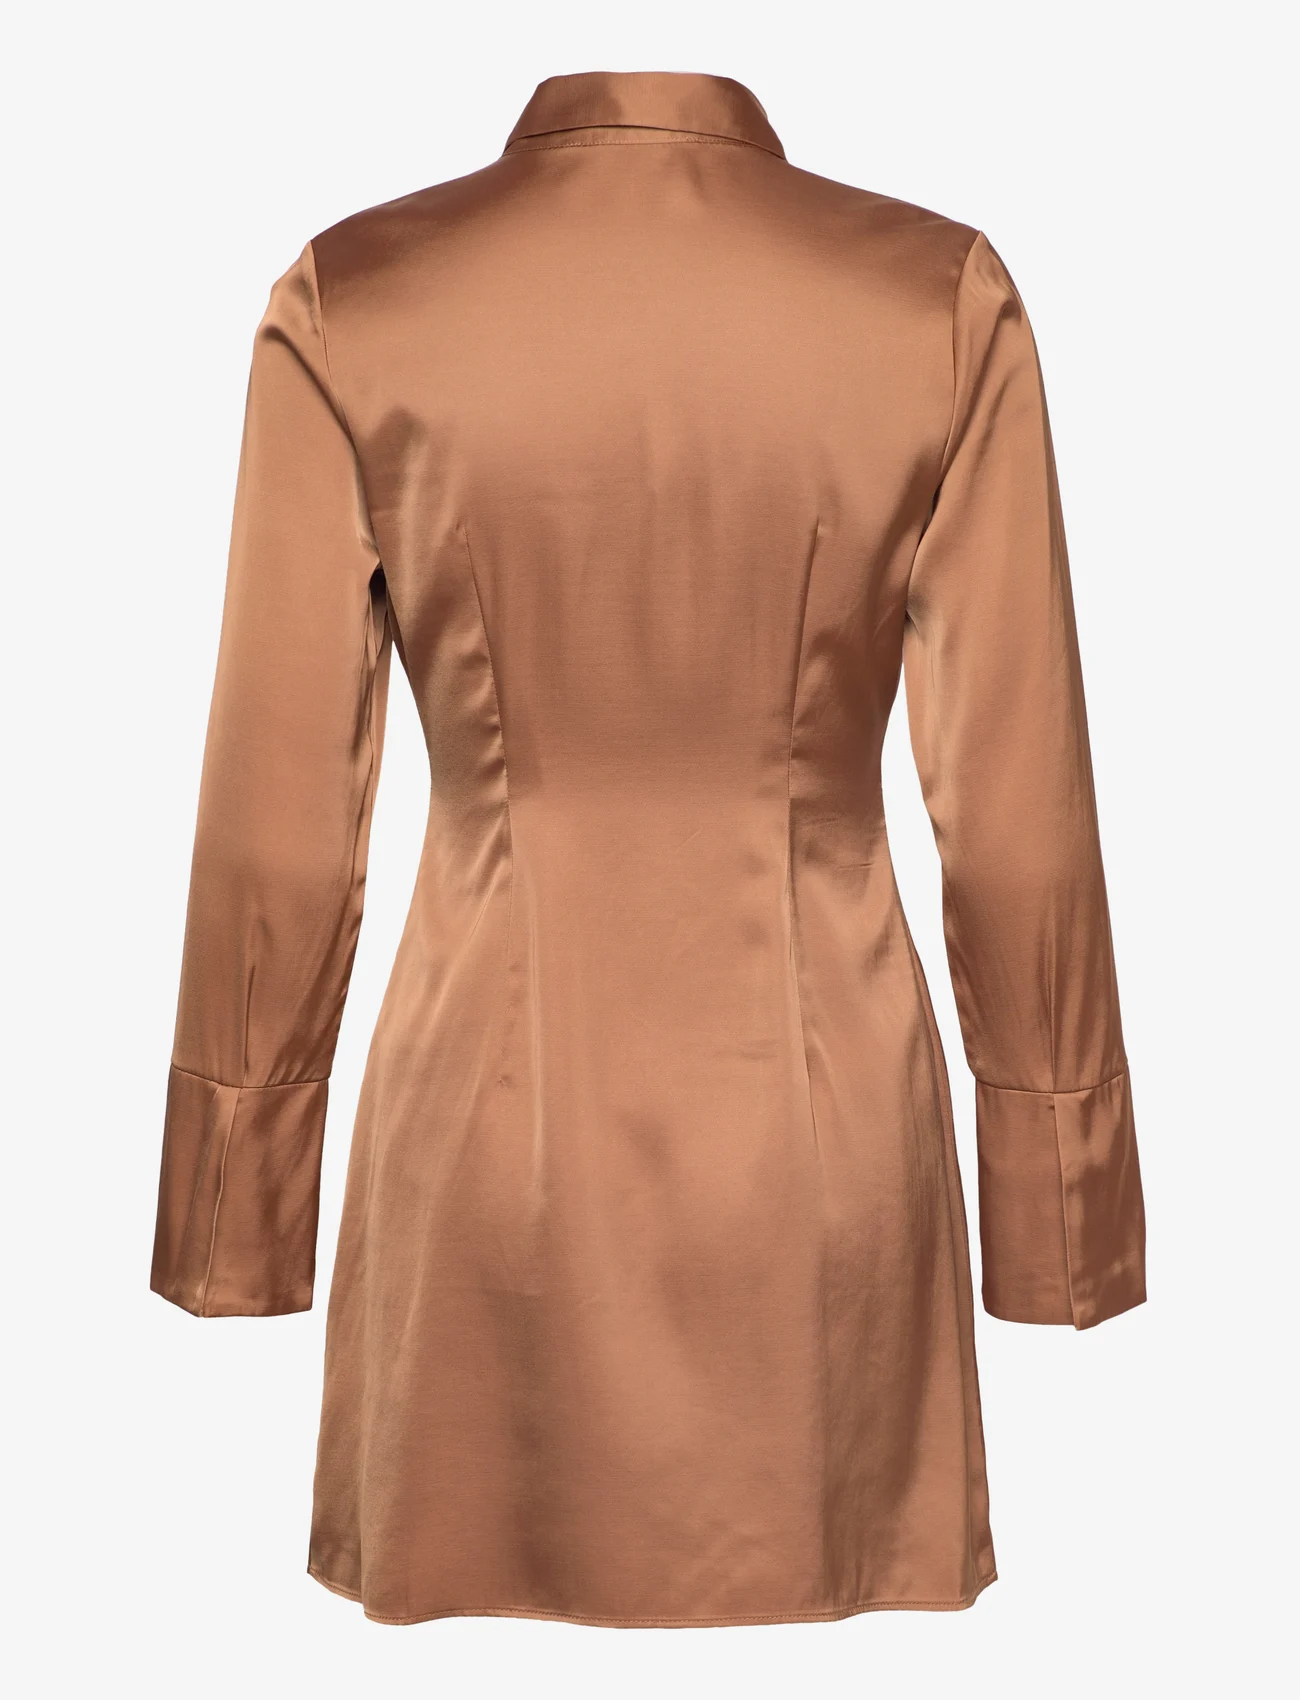 Abercrombie & Fitch - ANF WOMENS DRESSES - marškinių tipo suknelės - brown - 1